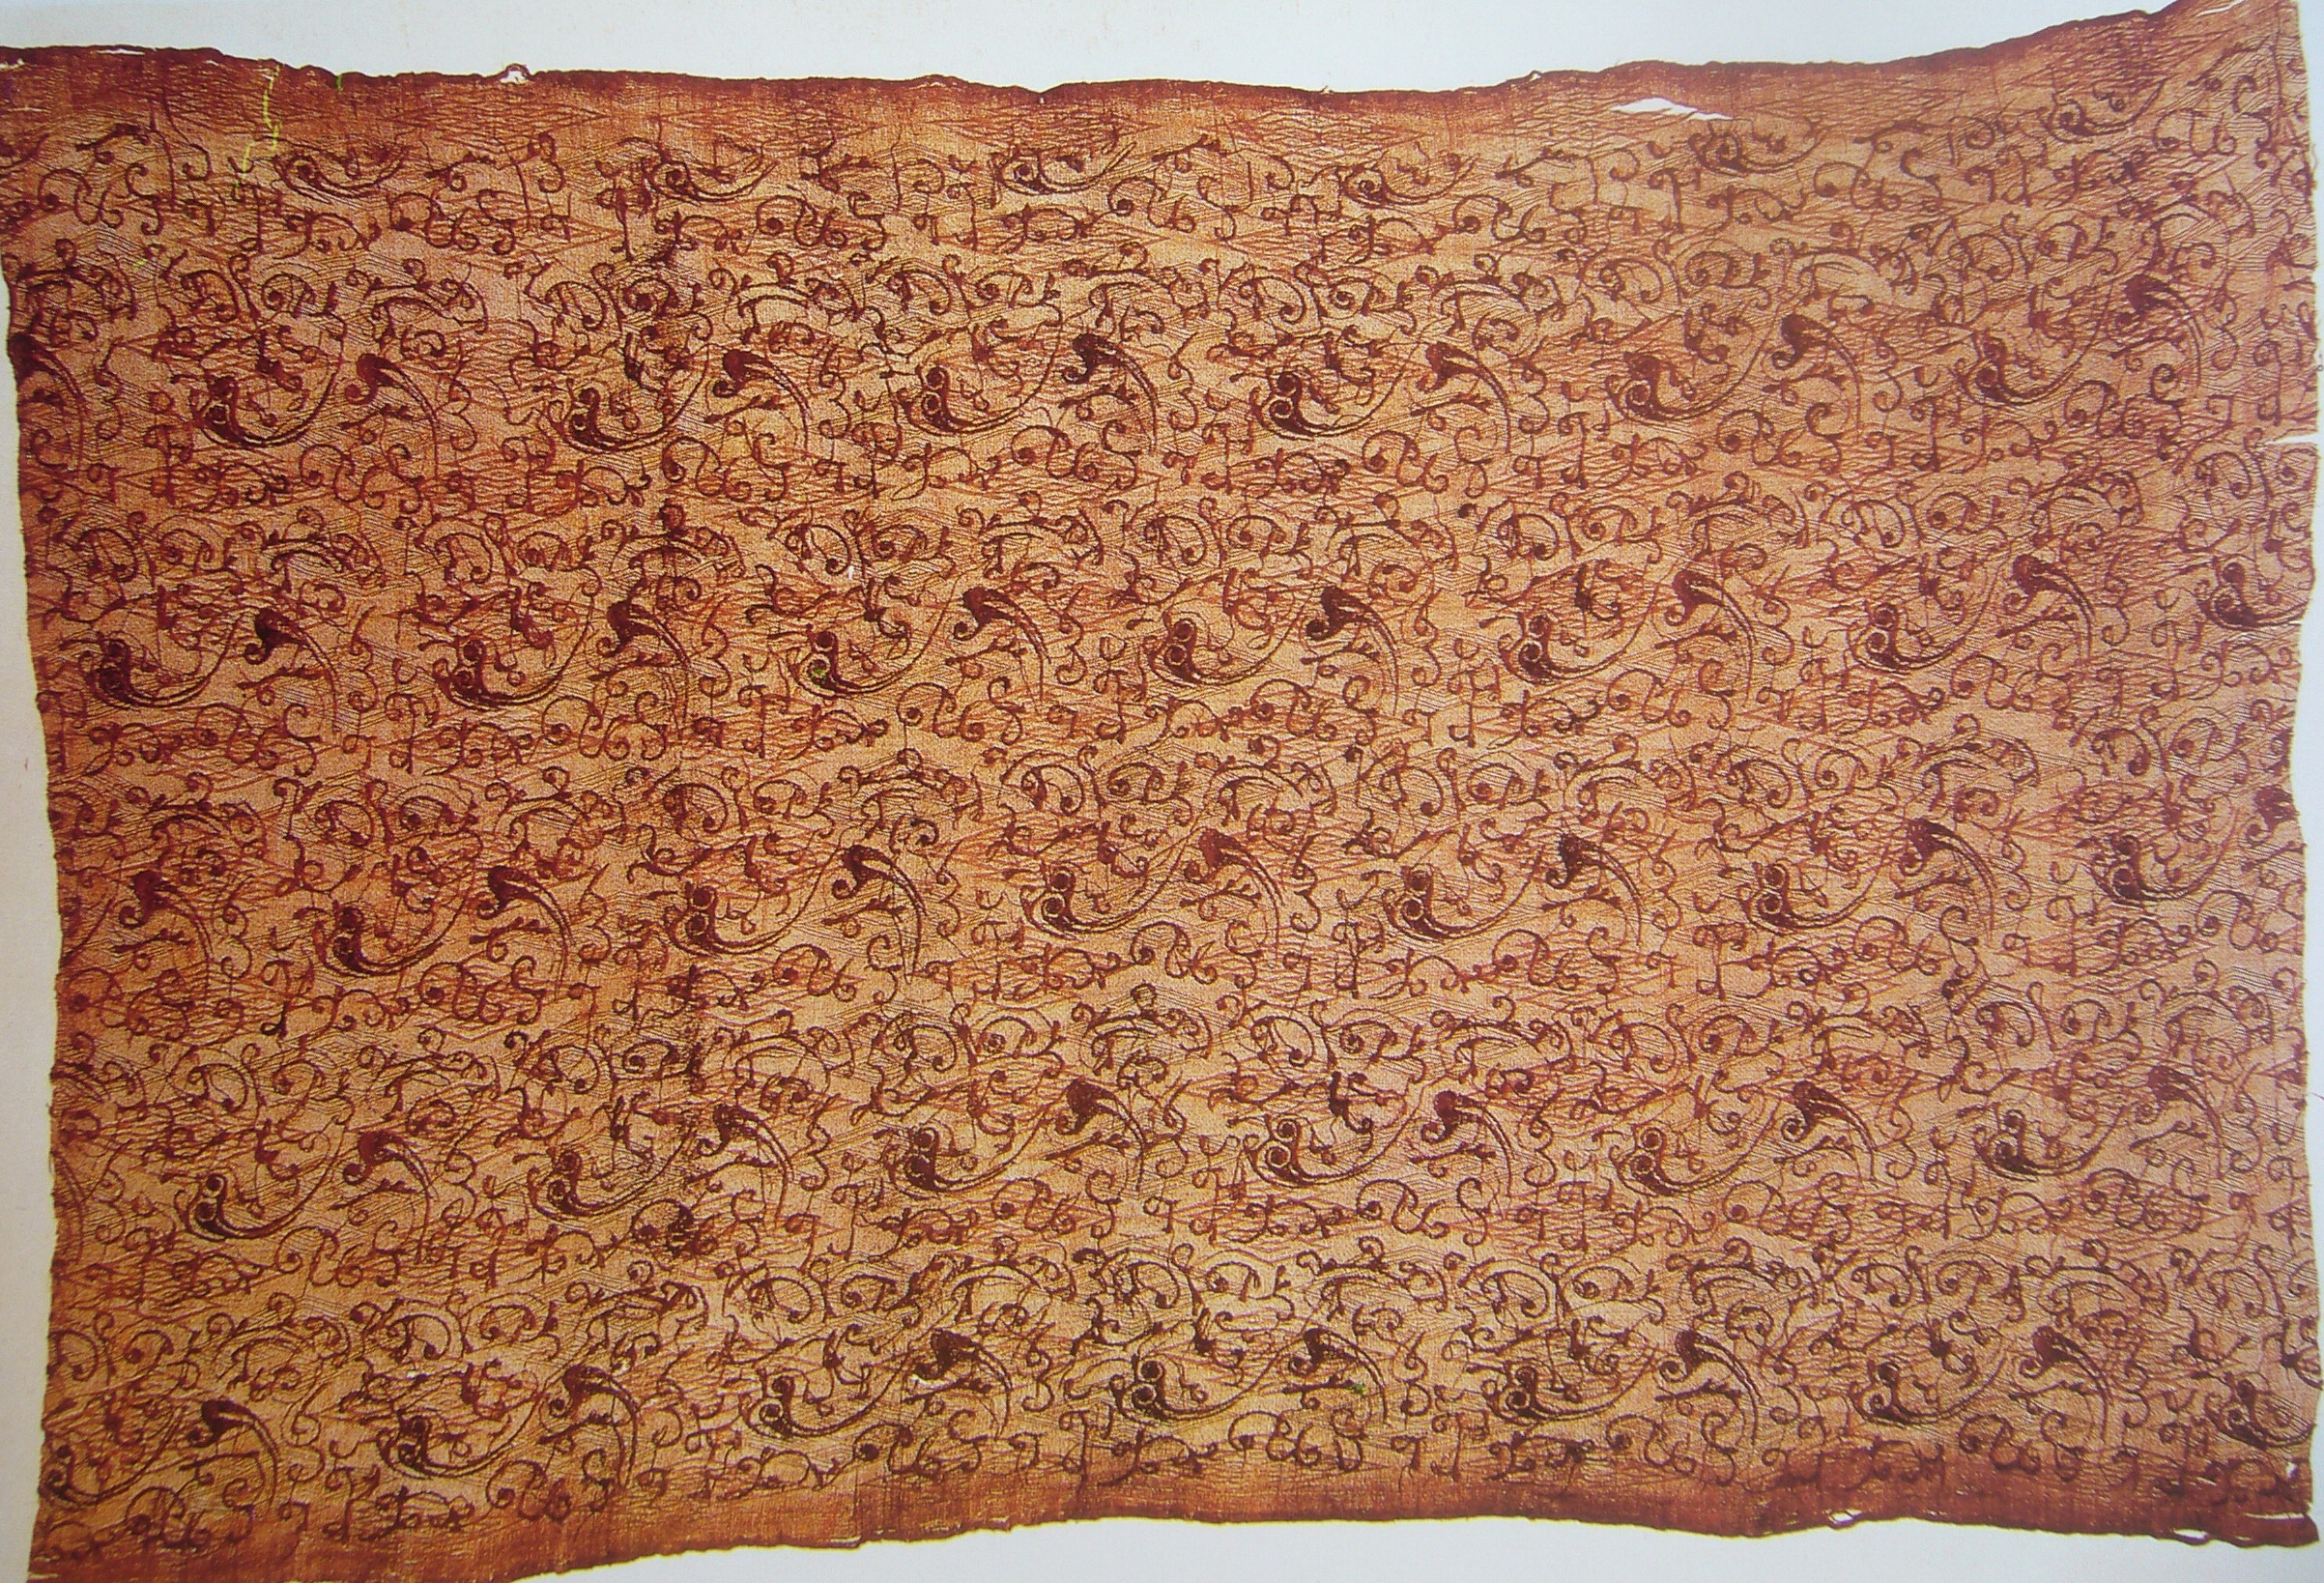 秦汉时期纺织品纹样图片